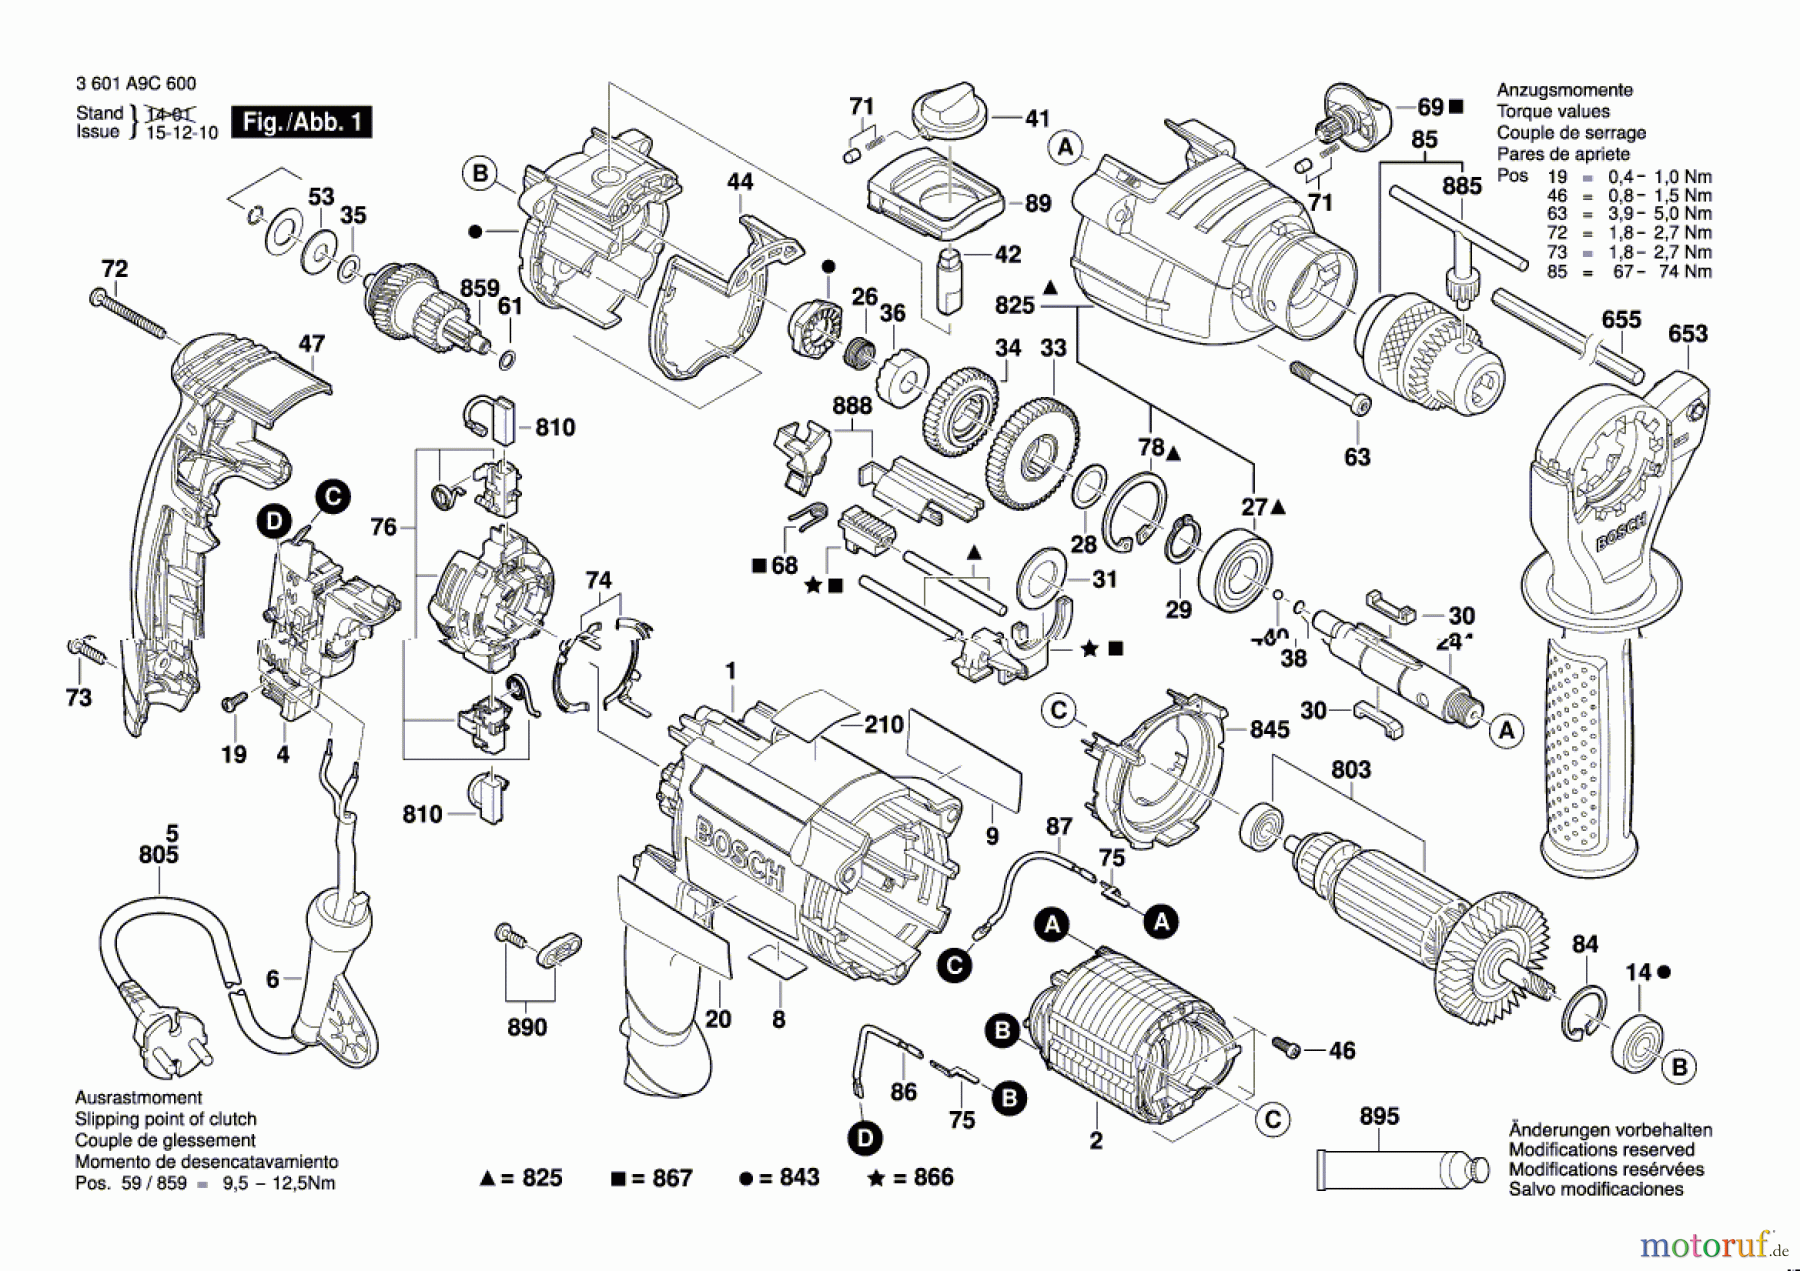  Bosch Werkzeug Schlagbohrmaschine GSB 21-2 RE Seite 1